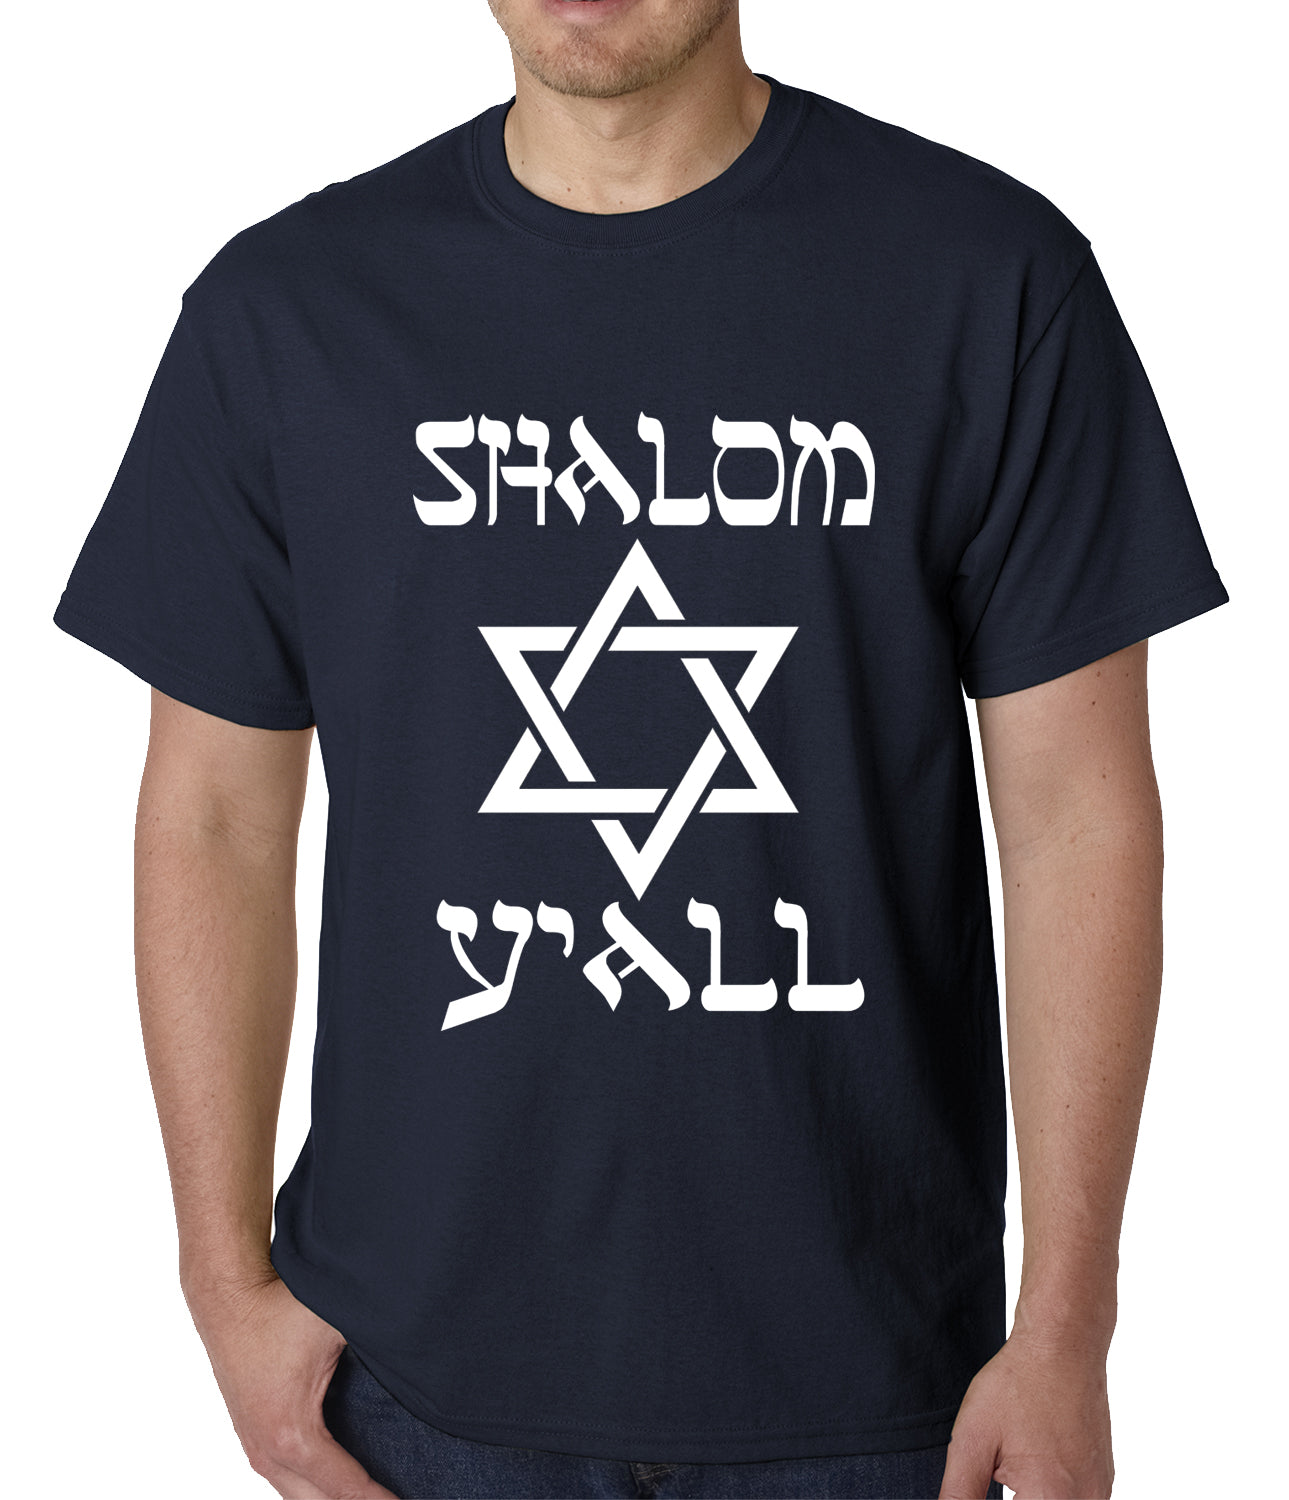 Shalom Y'all Mens T-shirt